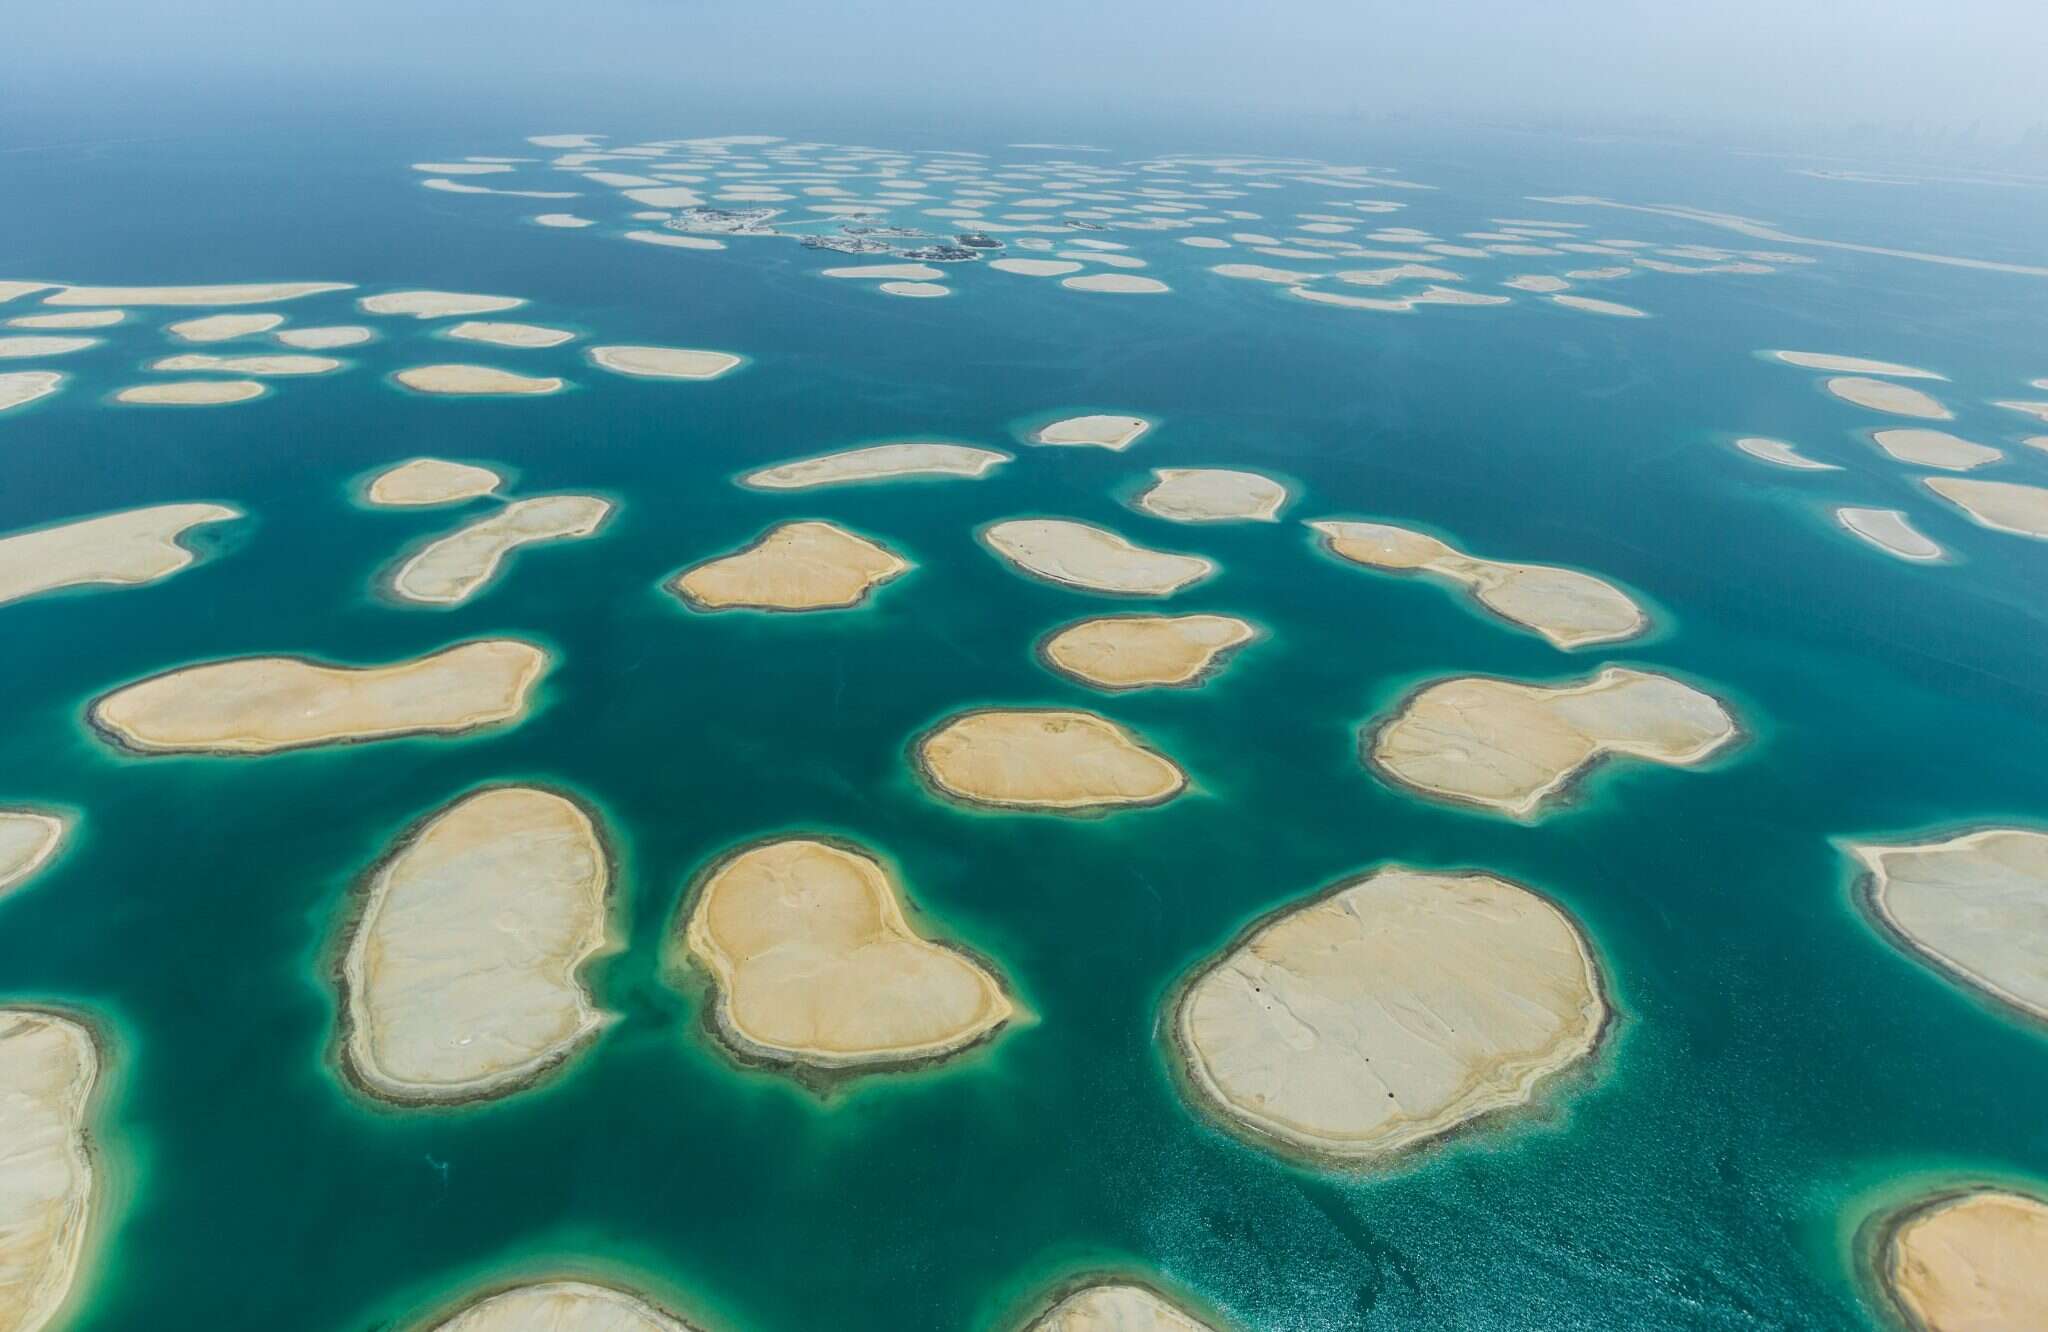 Dubai man made islands sinking